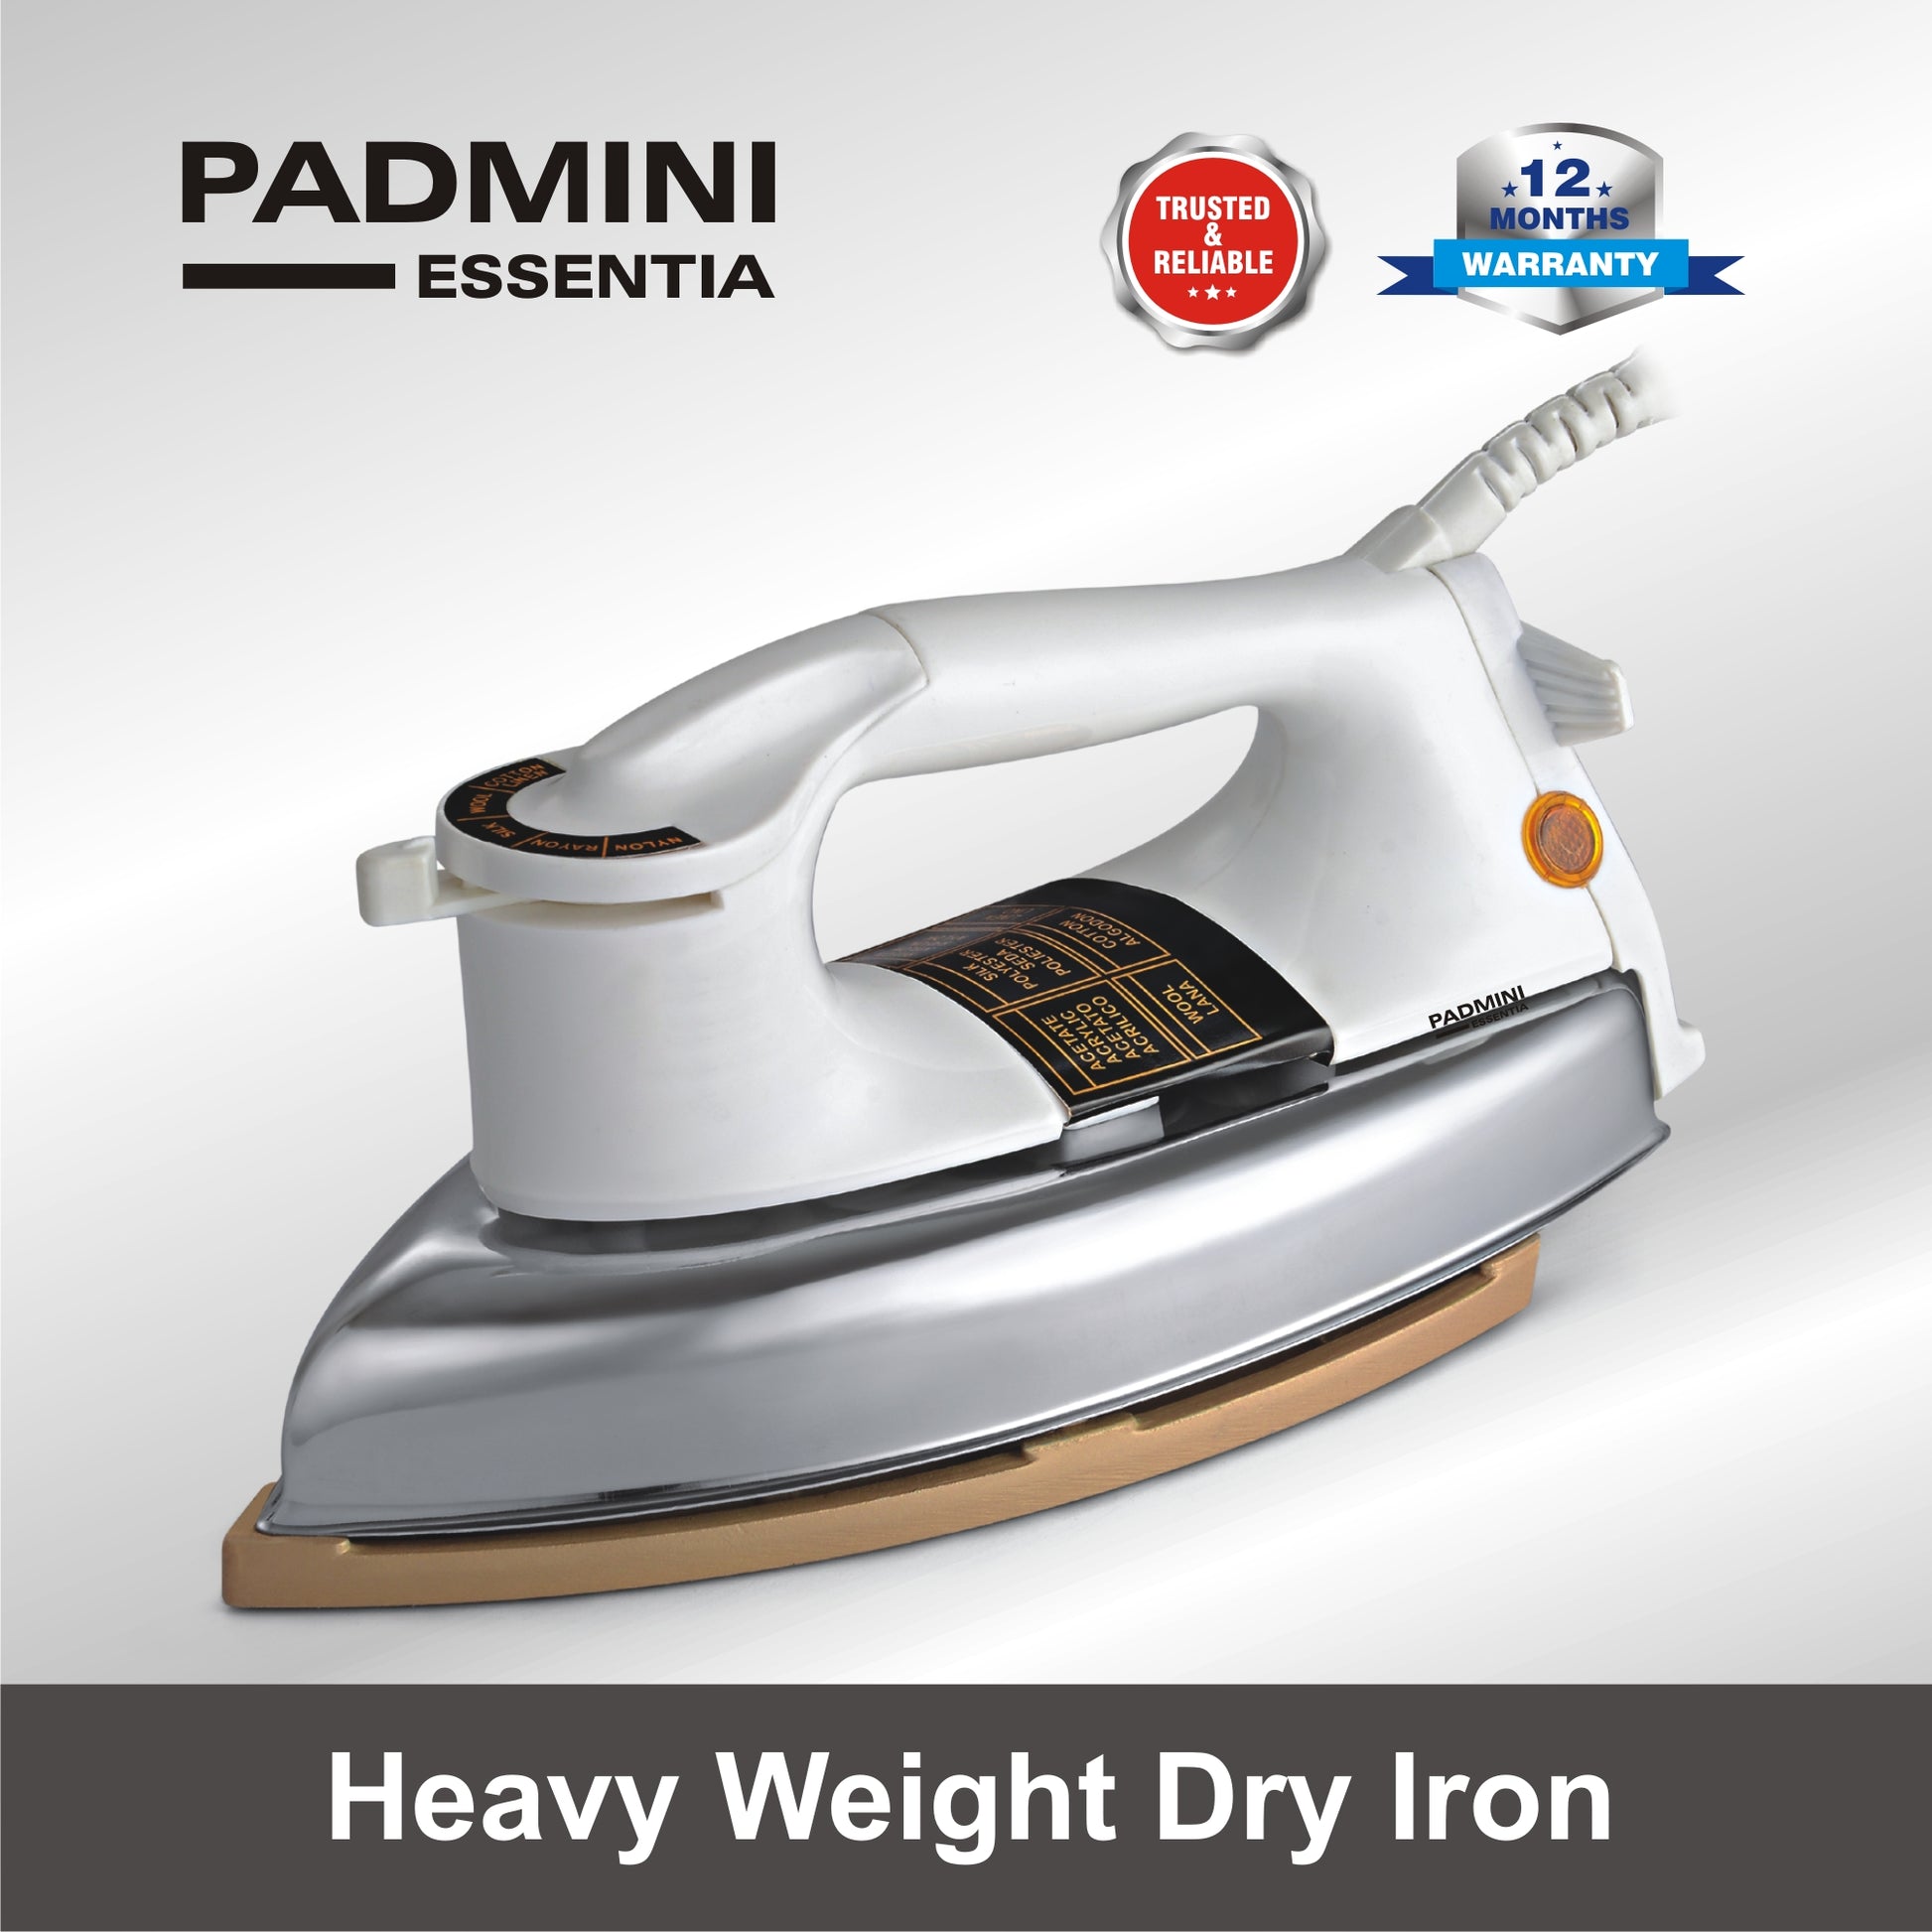 Heavy weight dry iron